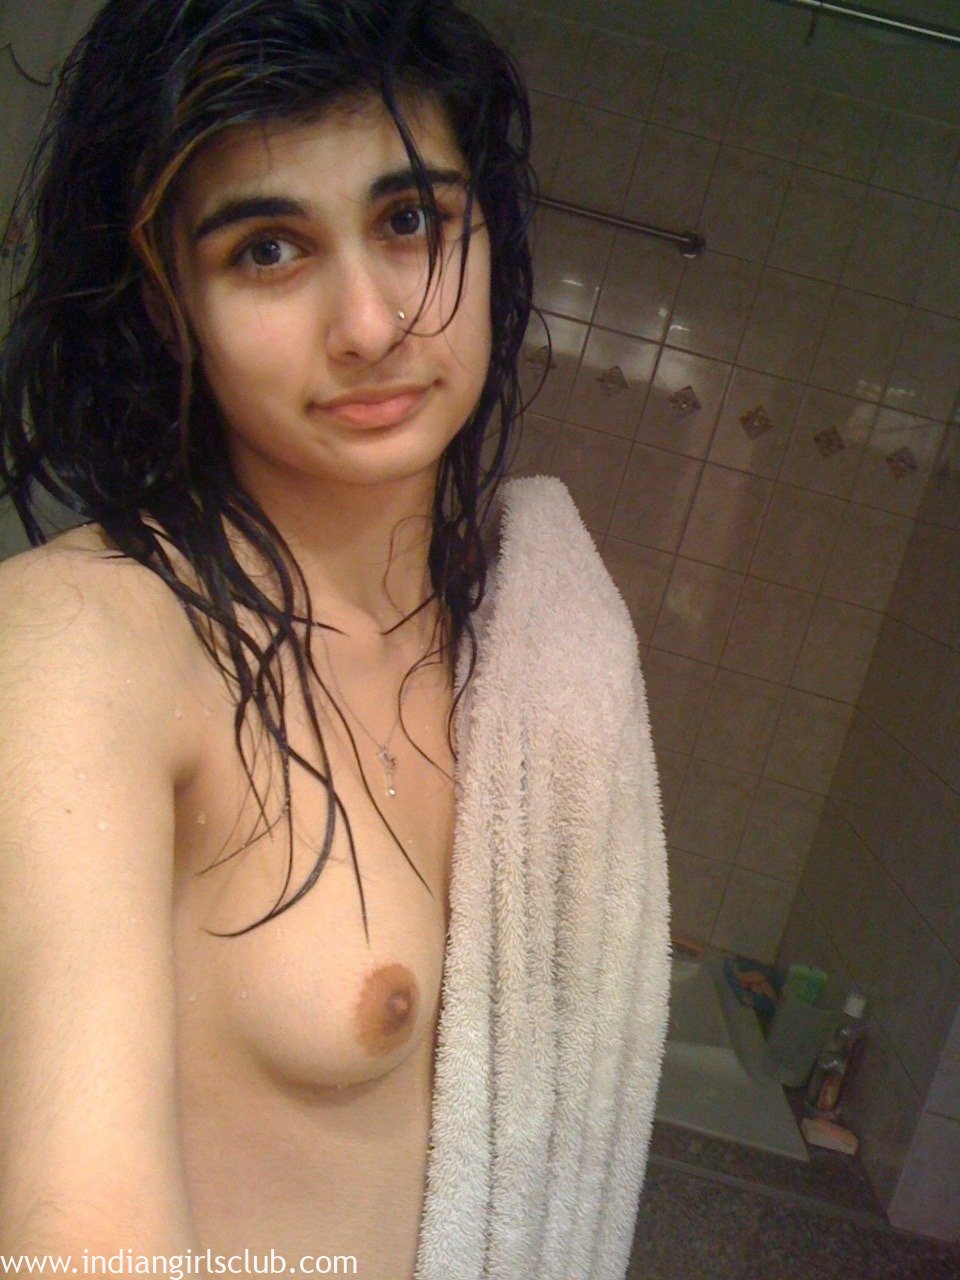 Cute Pakistani Nude - Sexy Beautiful Pakistani Girl Nude - Indian Girls Club